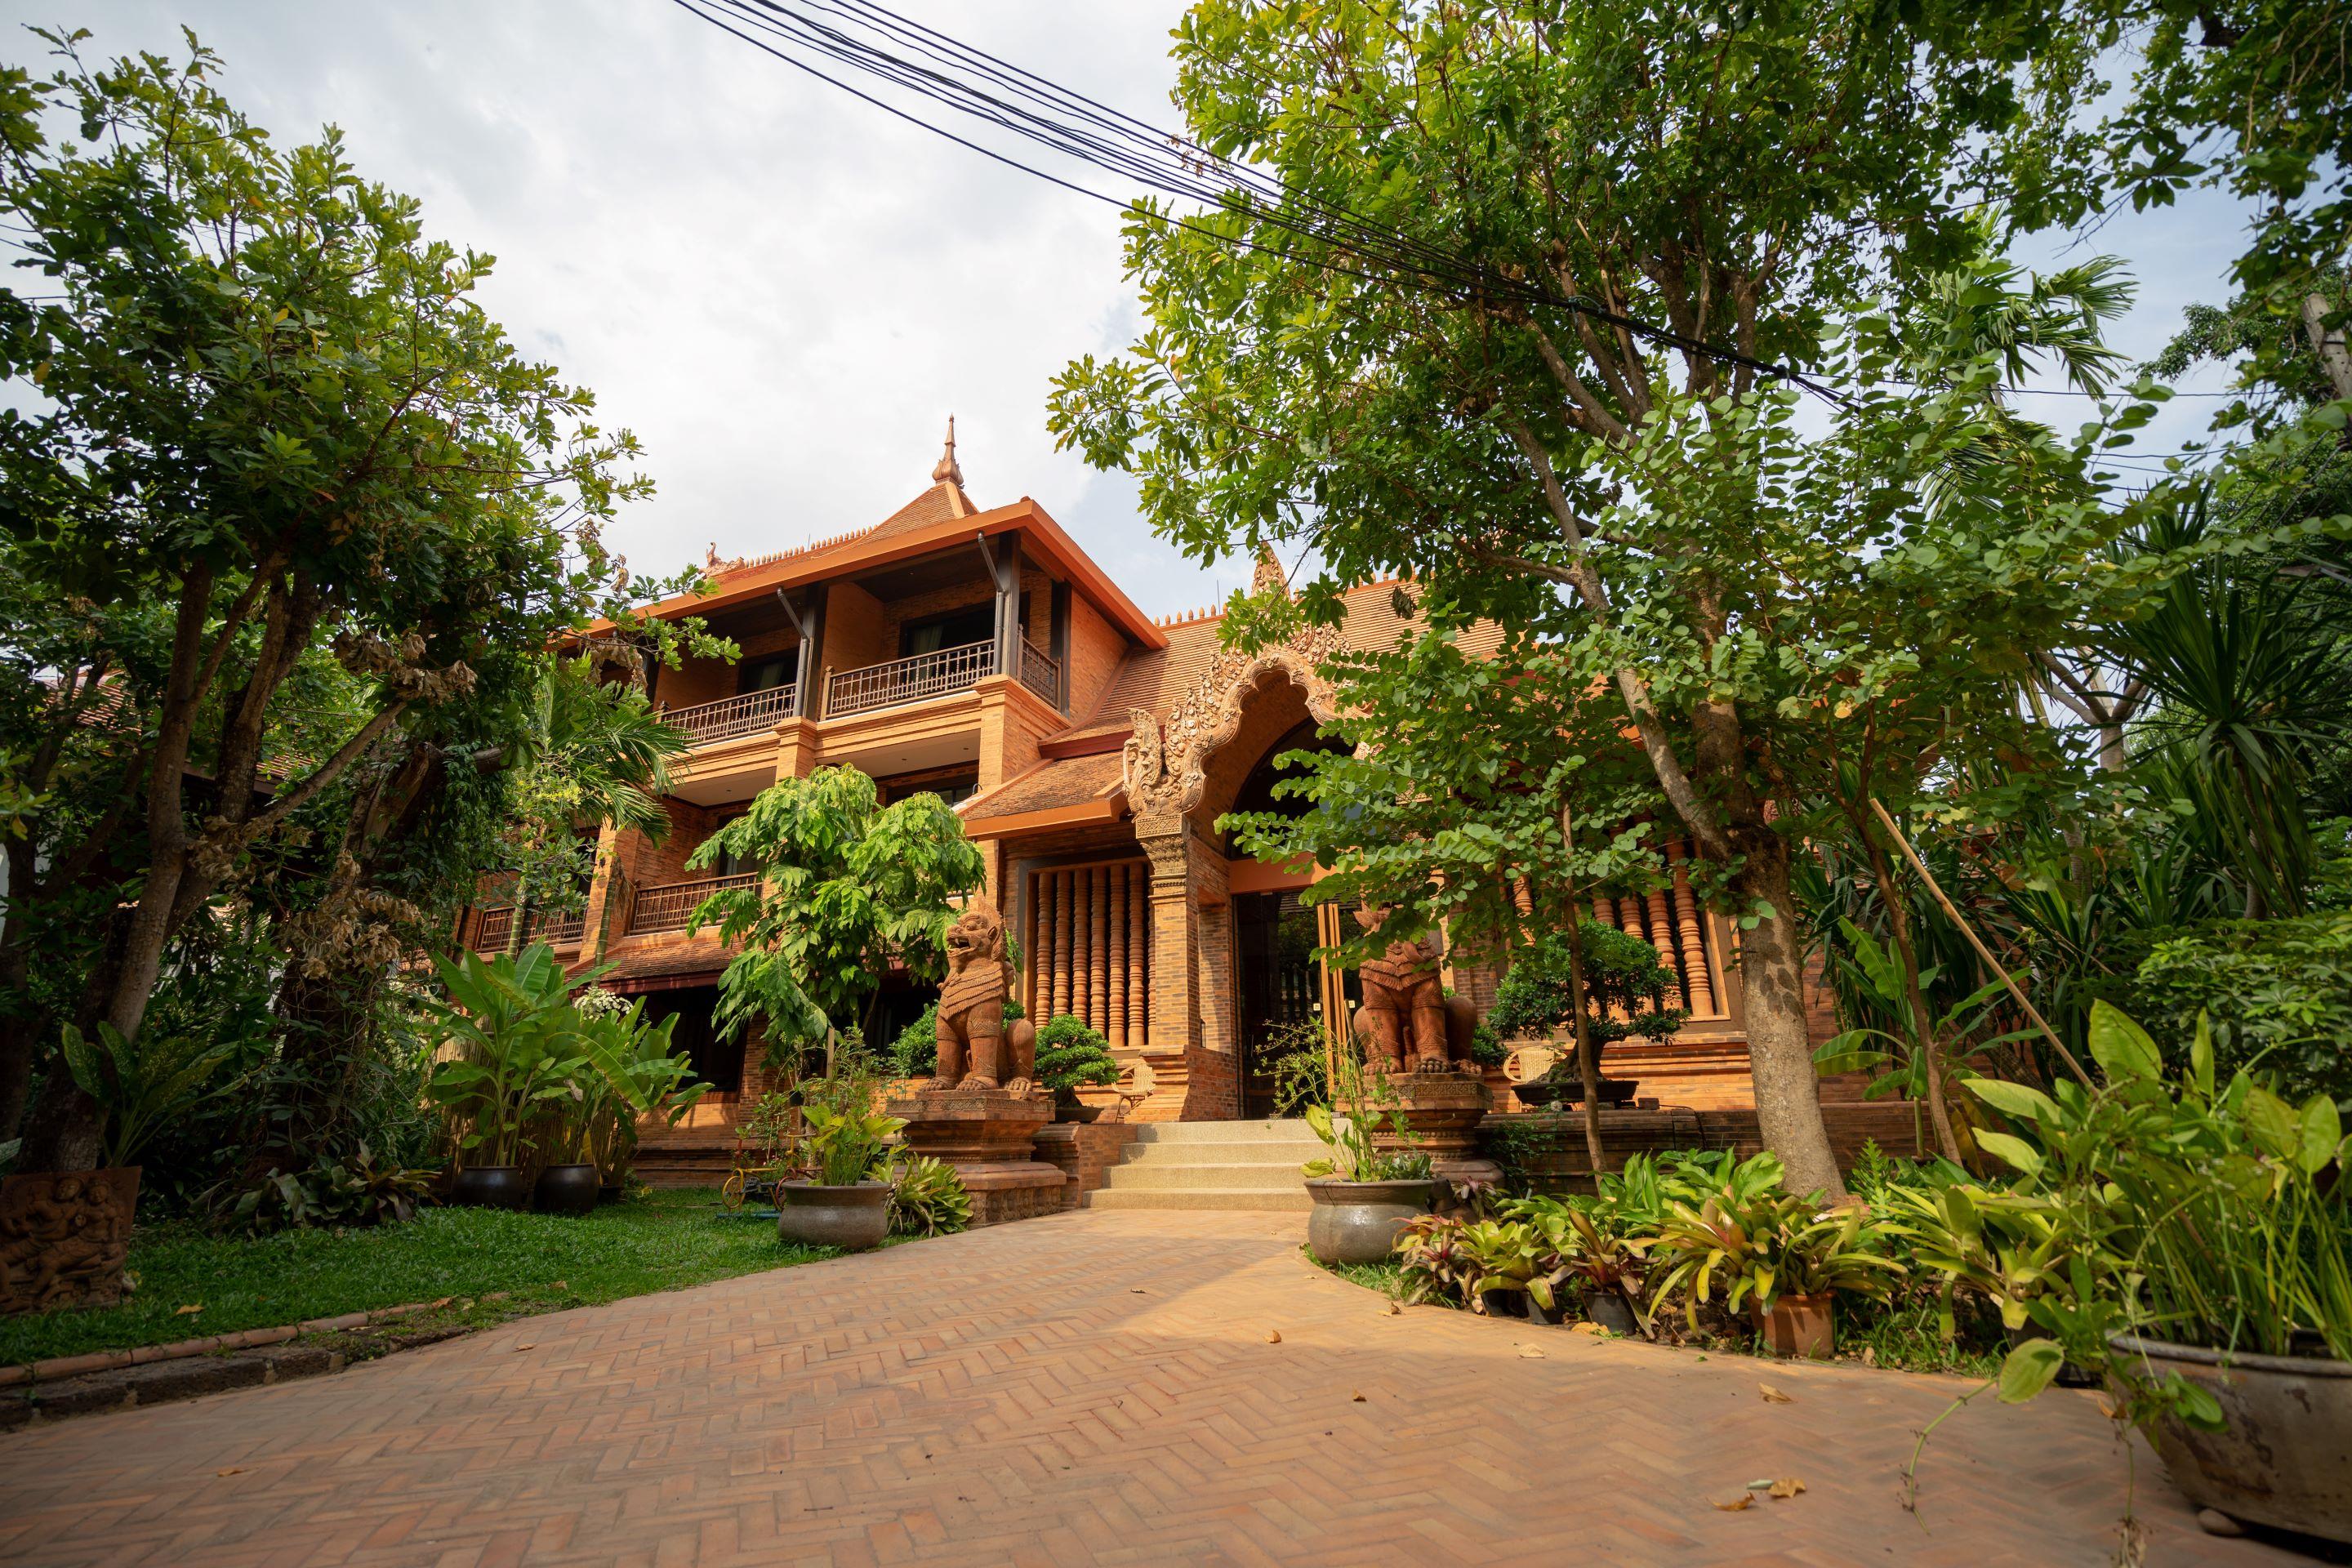 Phor Liang Meun Terracotta Arts - Sha Extra Plus Chiang Mai Exterior photo